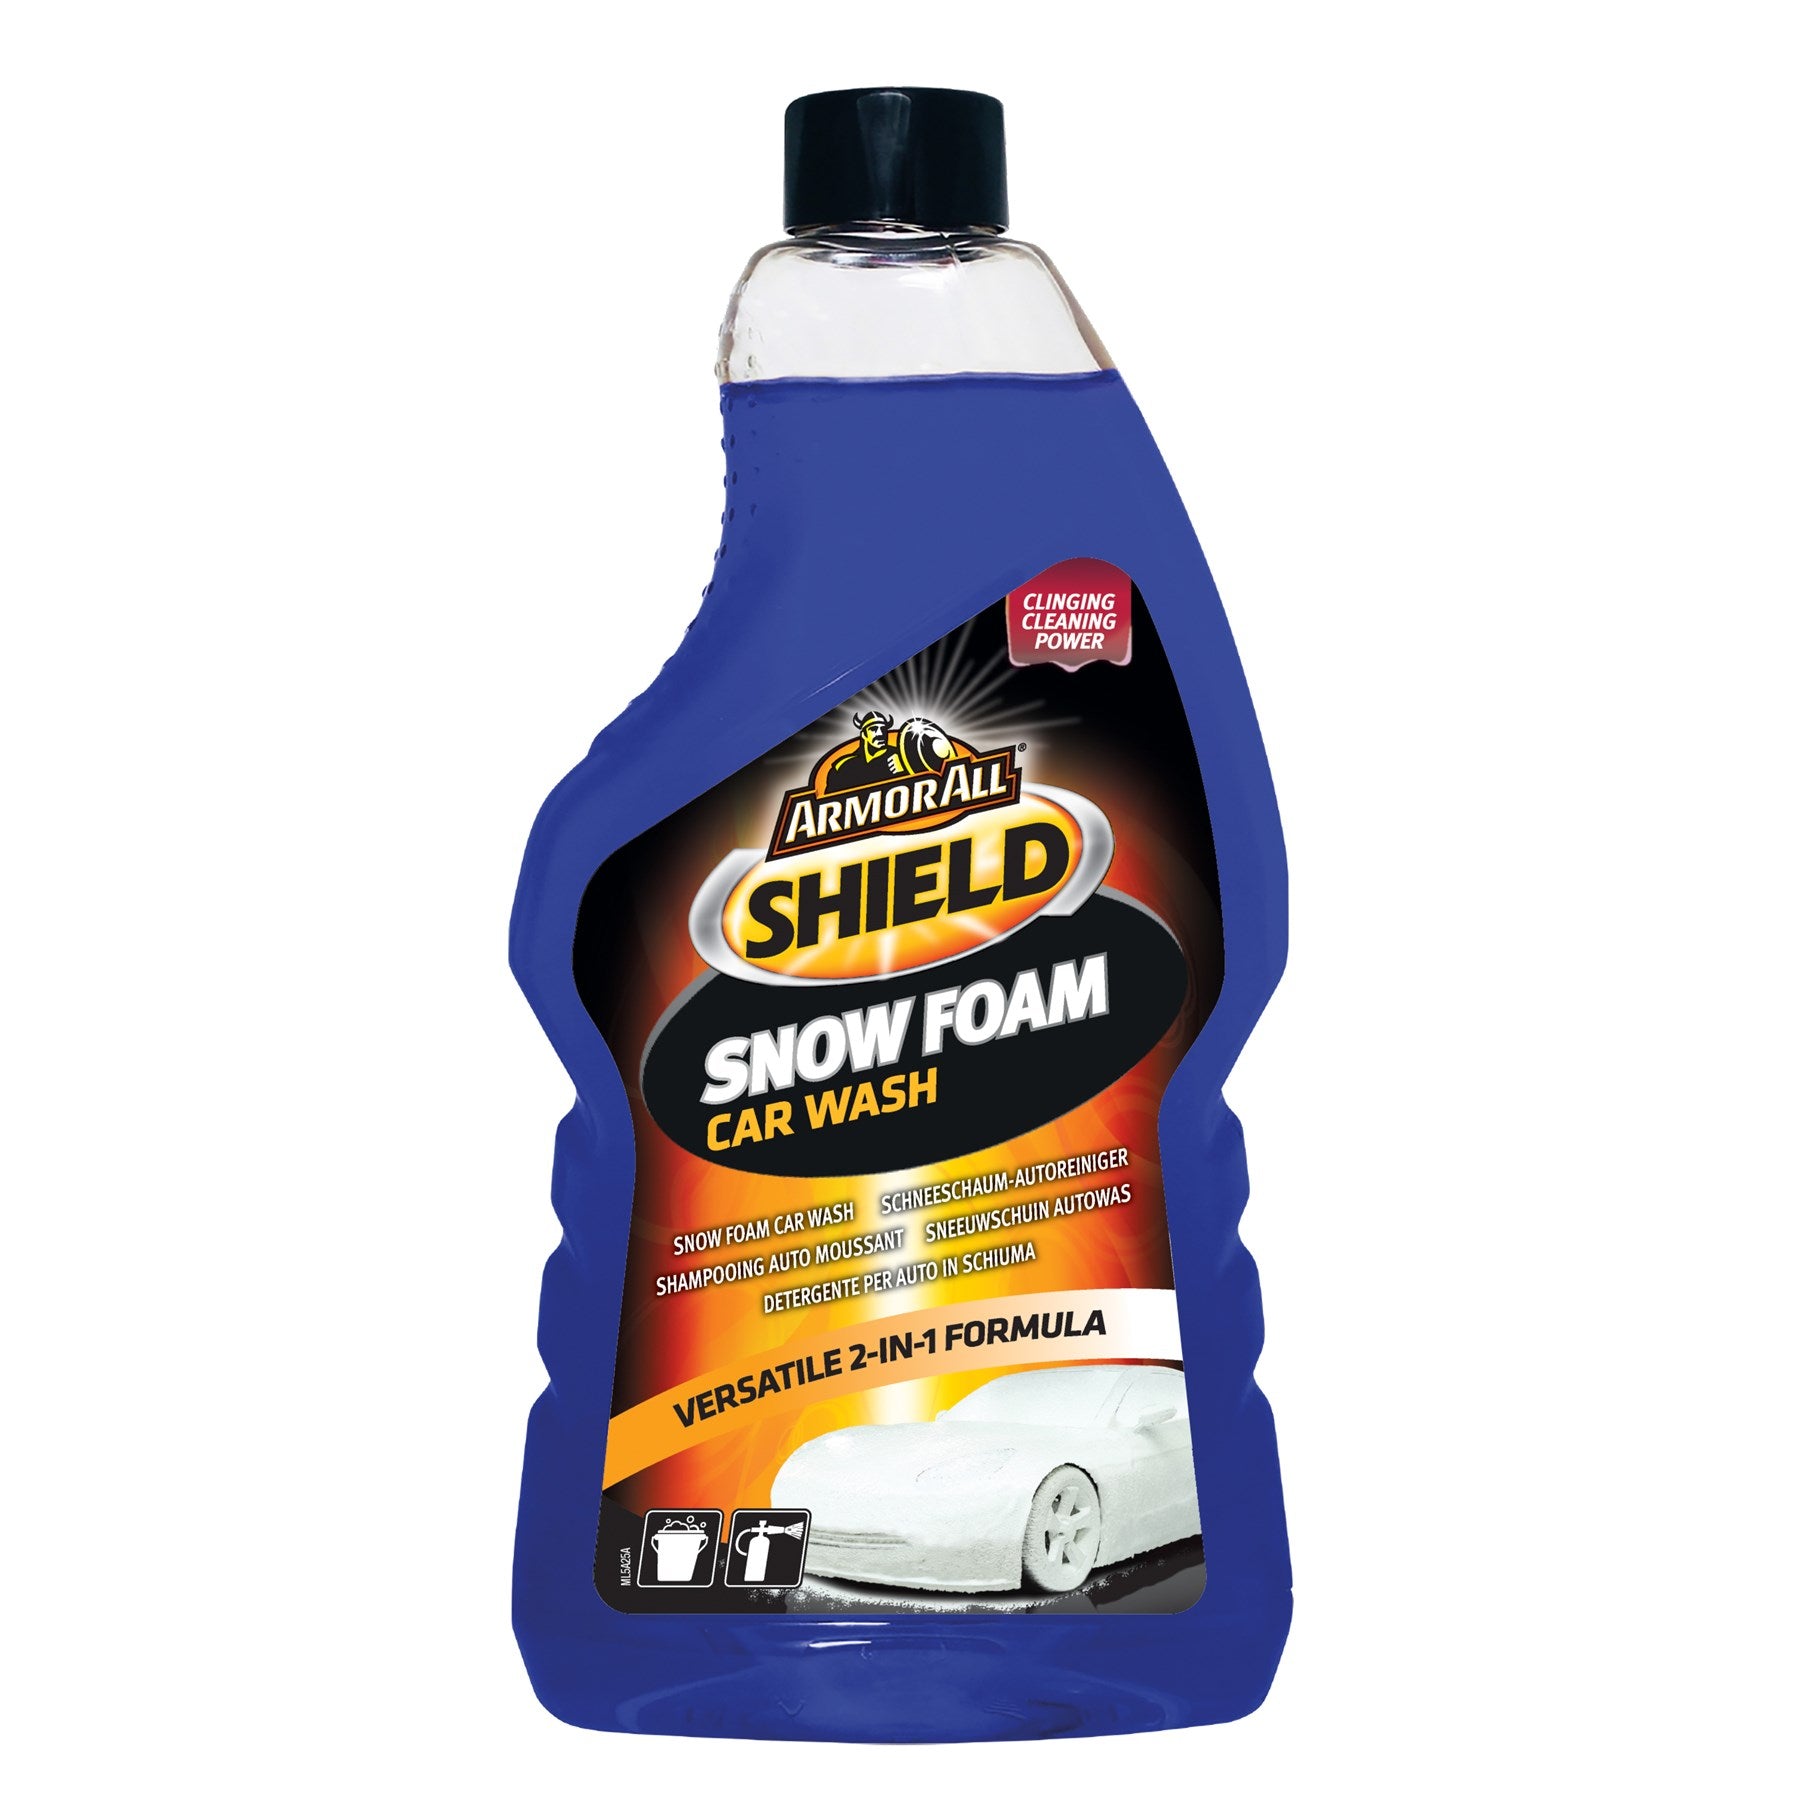 Armor All Shield Snow Foam Car Wash (520ml)